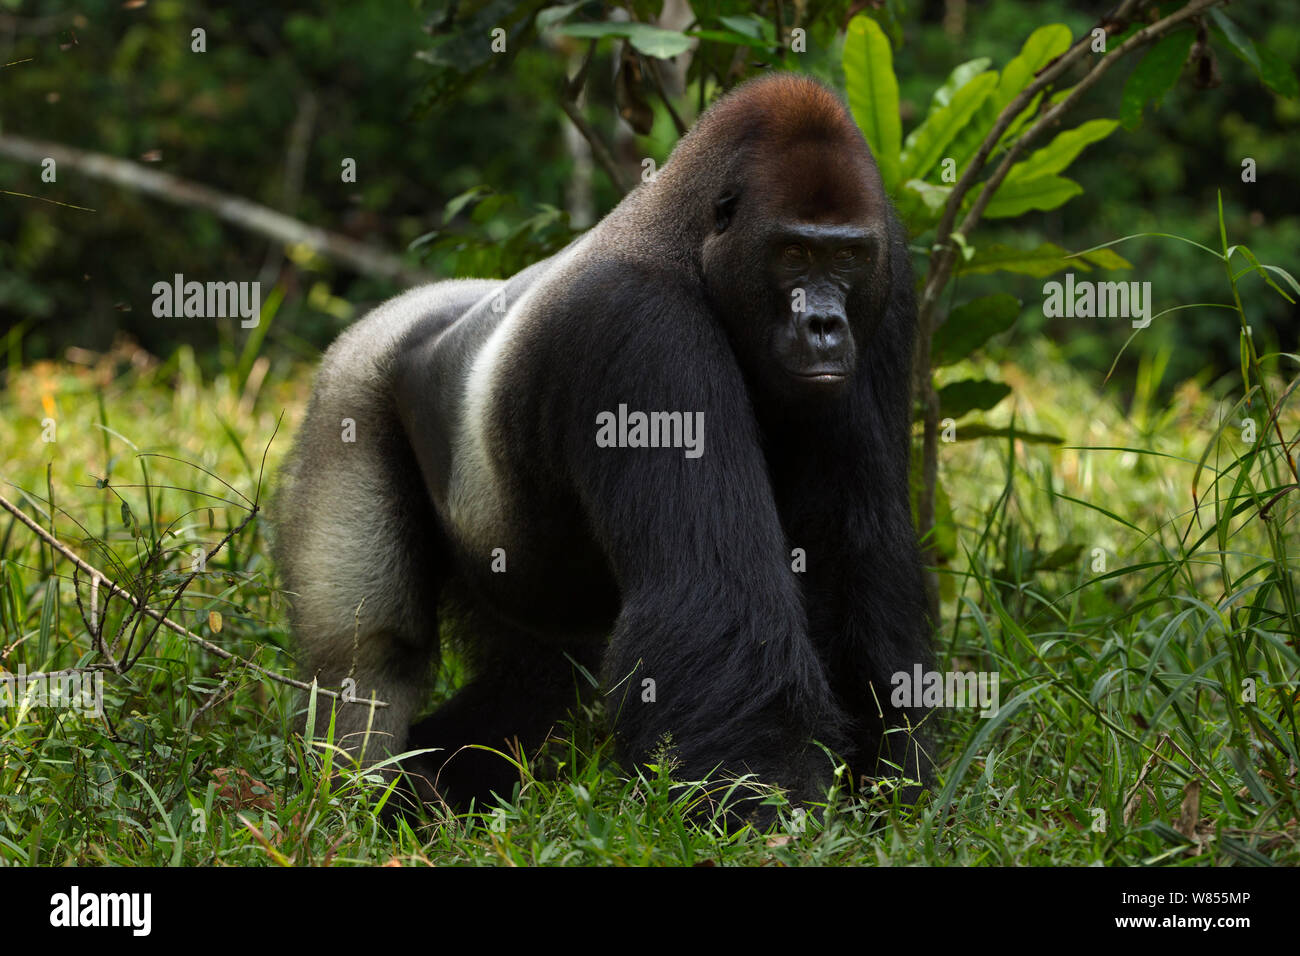 Gorille de plaine de l'ouest (Gorilla gorilla gorilla) mâle dominant silverback 'Makumba' âgé de 32 ans, Bai Hokou portrait permanent, une forêt dense de Dzanga Sangha, République centrafricaine. Décembre 2011. Banque D'Images